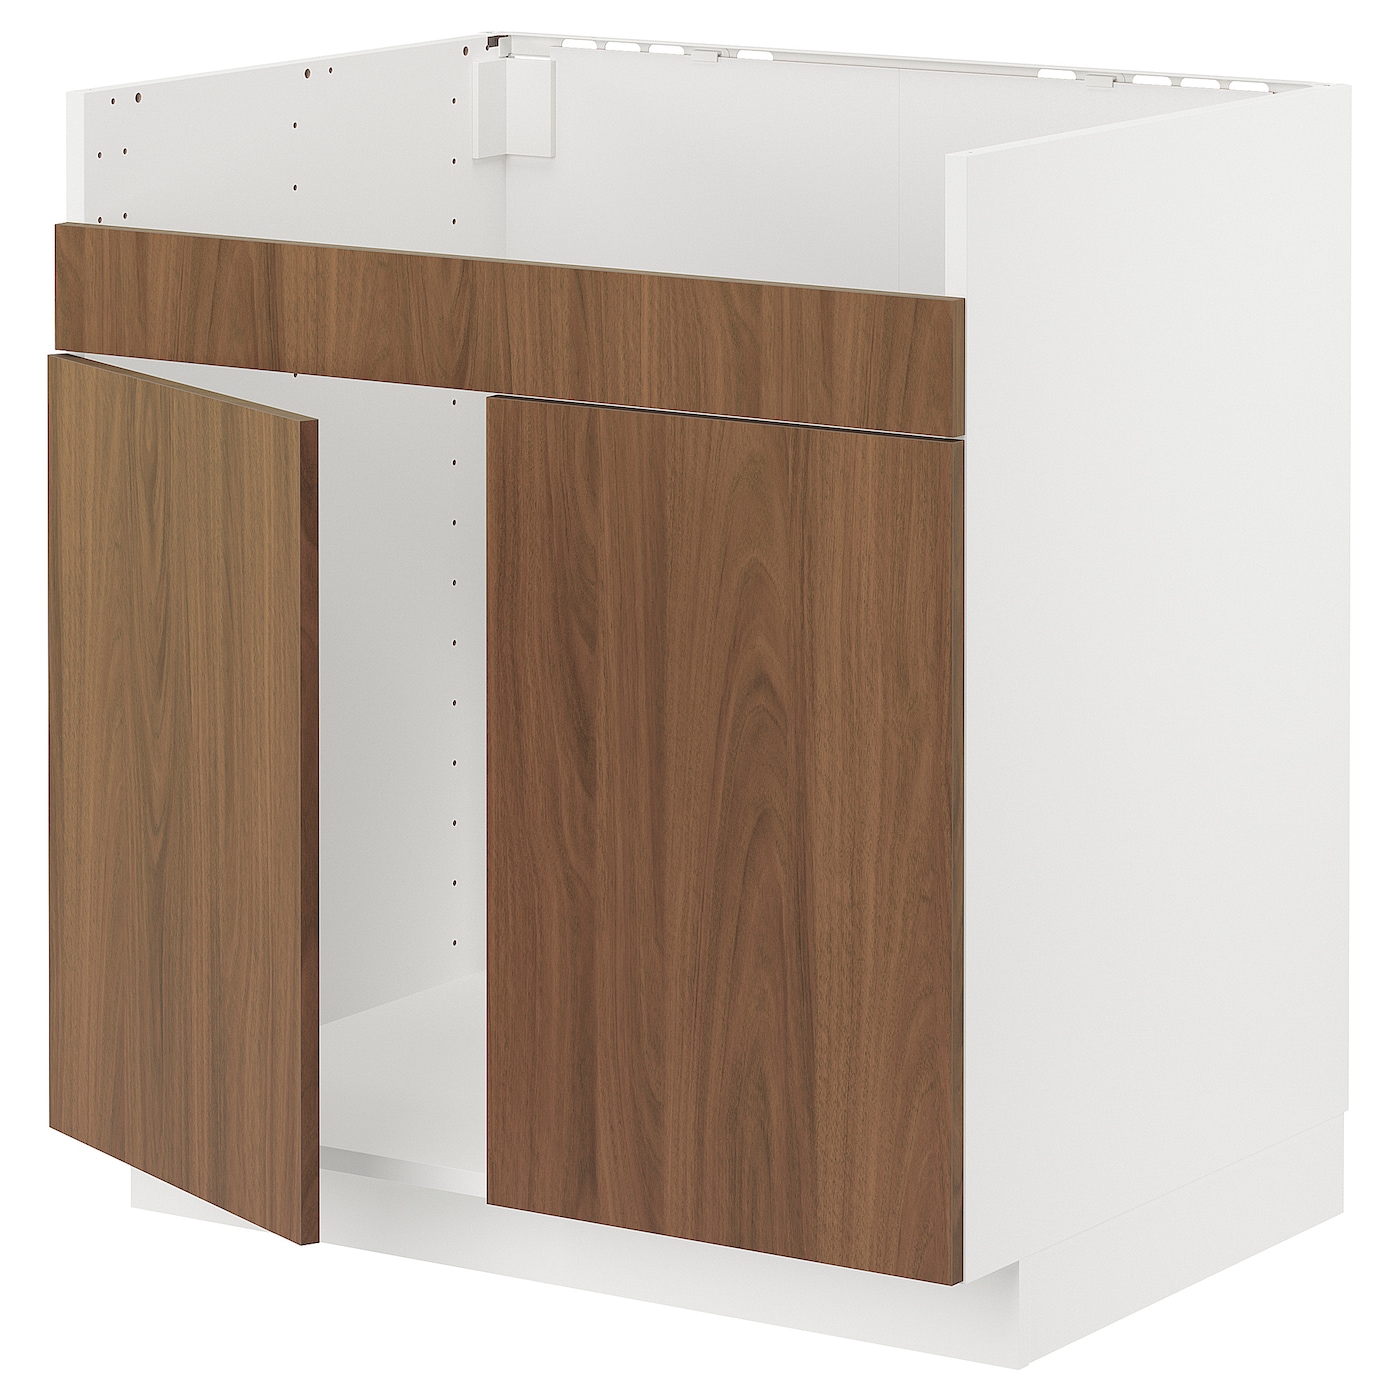 Напольный шкаф - METOD IKEA/ МЕТОД ИКЕА,  80х60 см, белый/коричневый